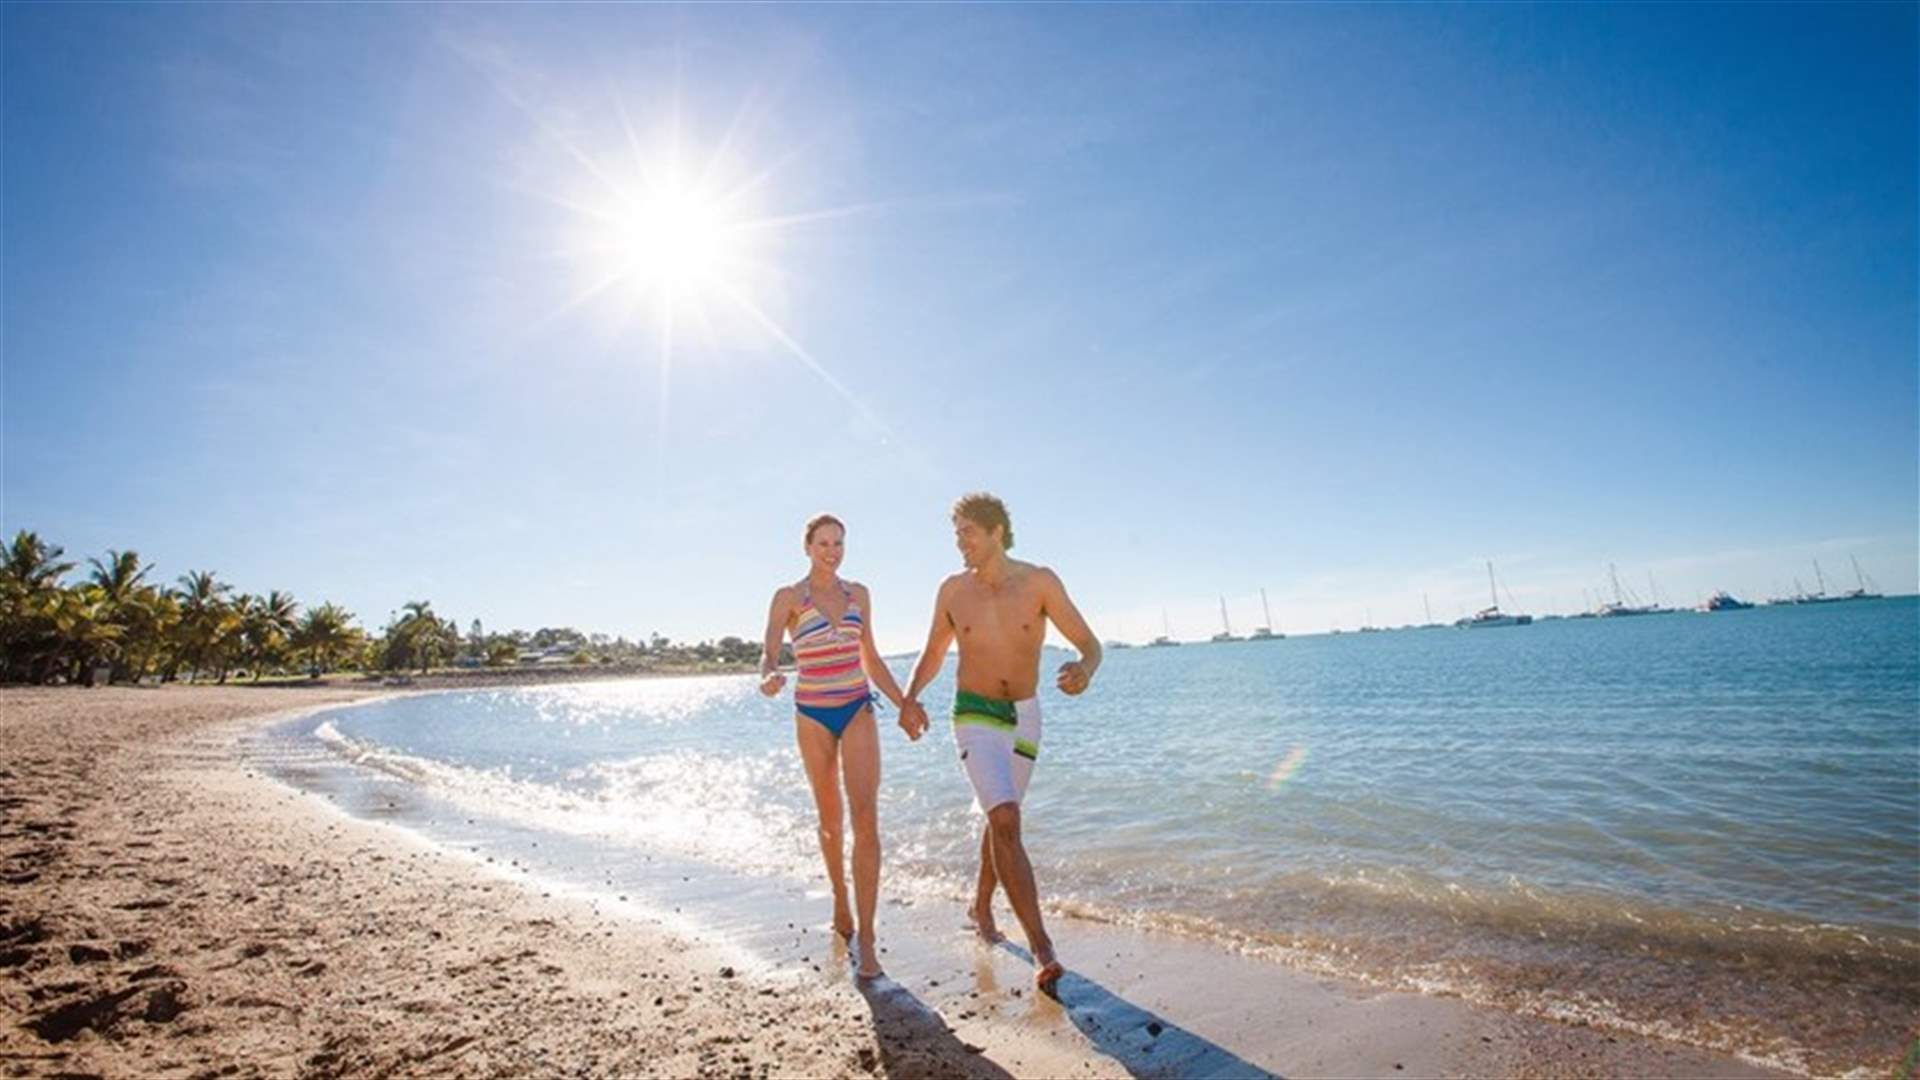 مع اقتراب الصيف... ما هي الفوائد الصحية لارتياد الشاطئ؟